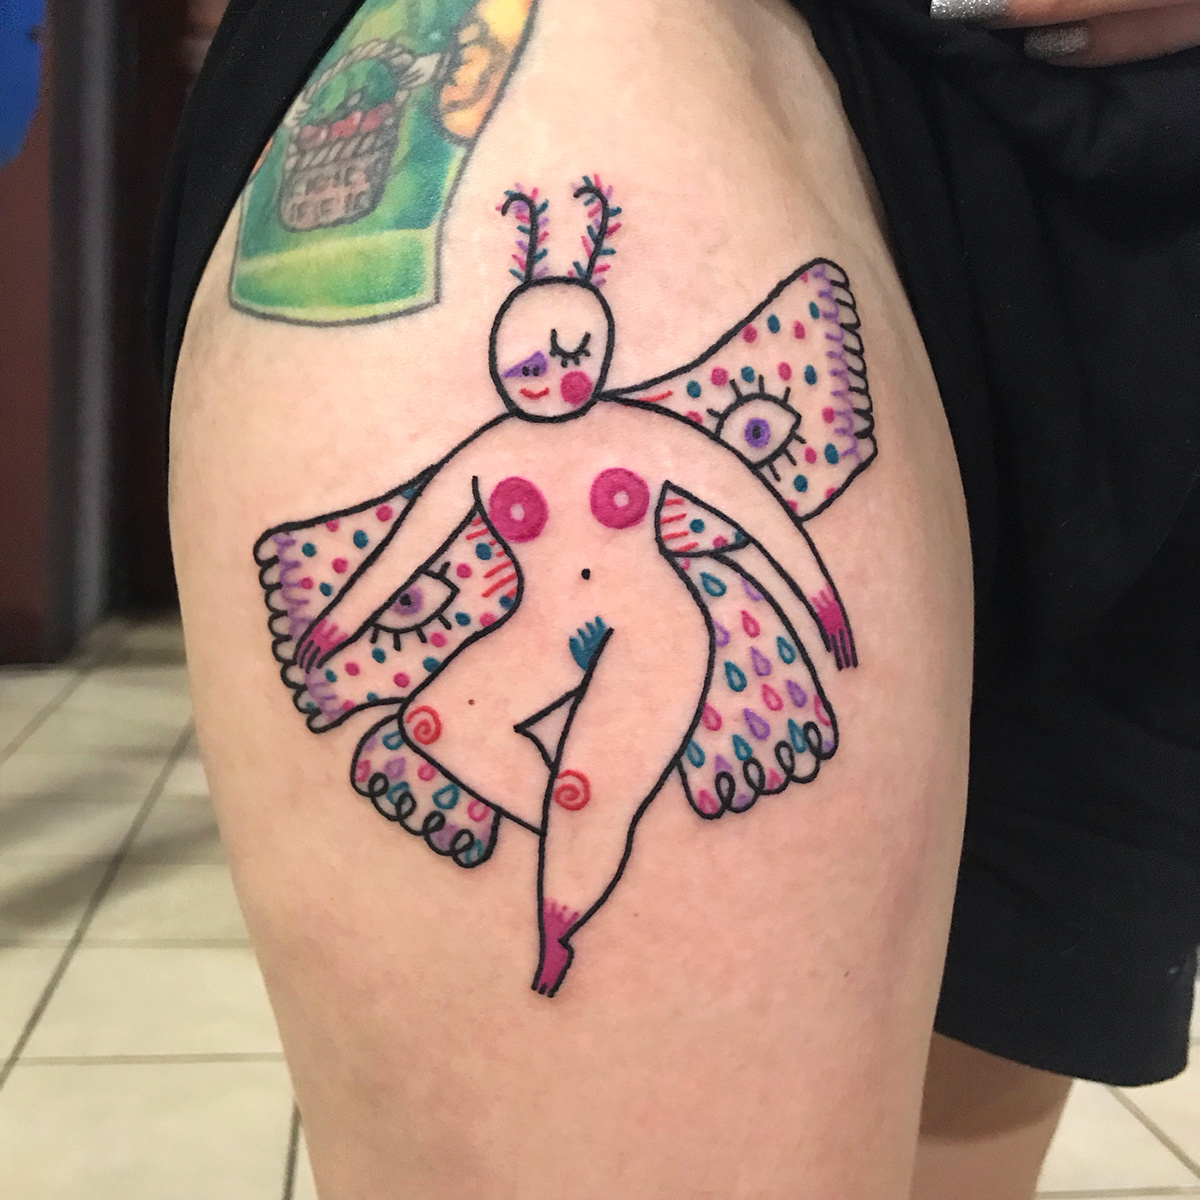 El Salvador tattoo moth witch Magical feminism queer